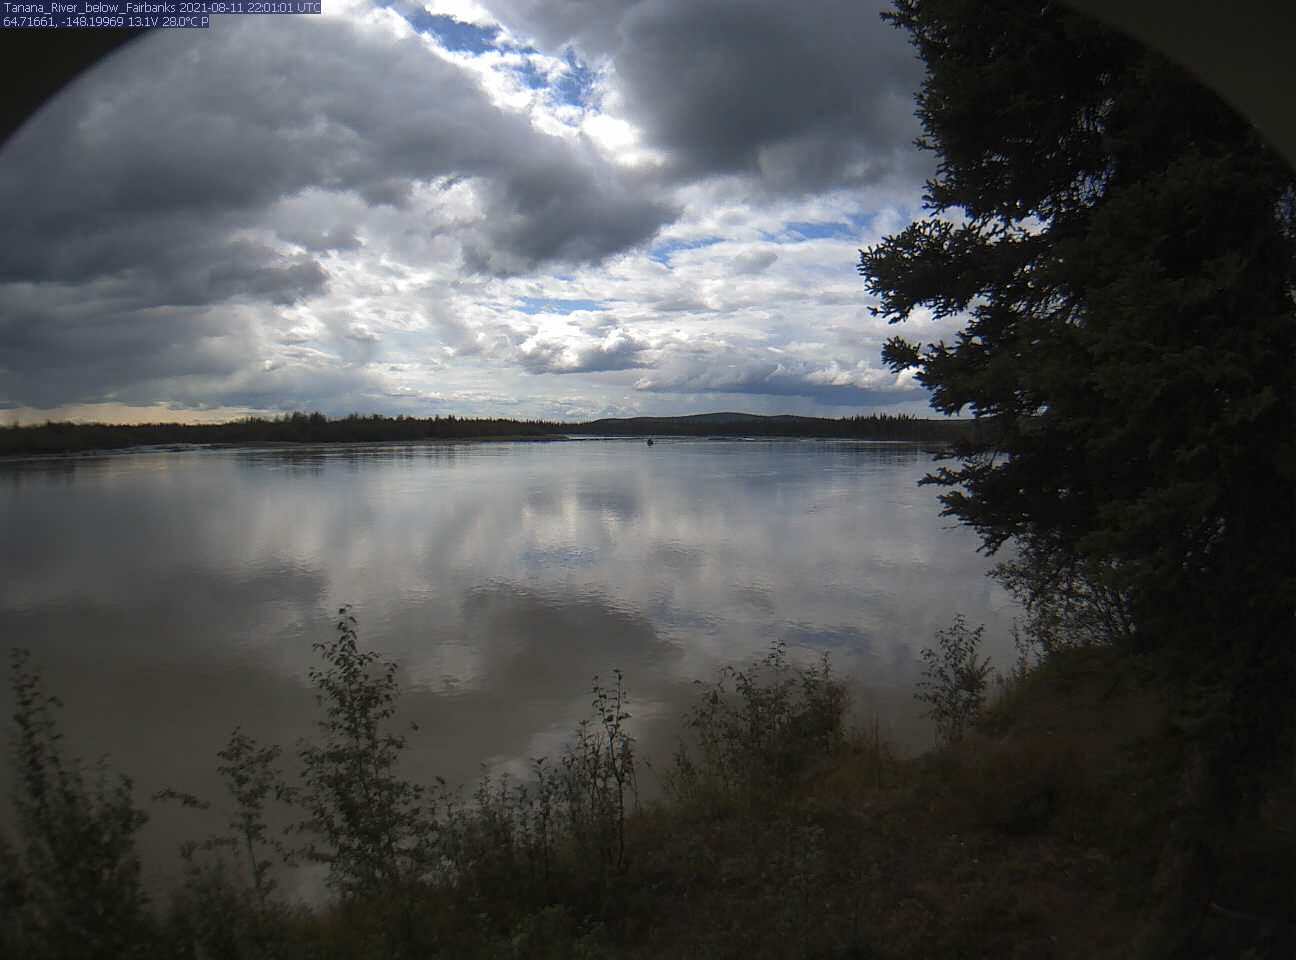 Tanana_River_below_Fairbanks_20210811220103.jpg